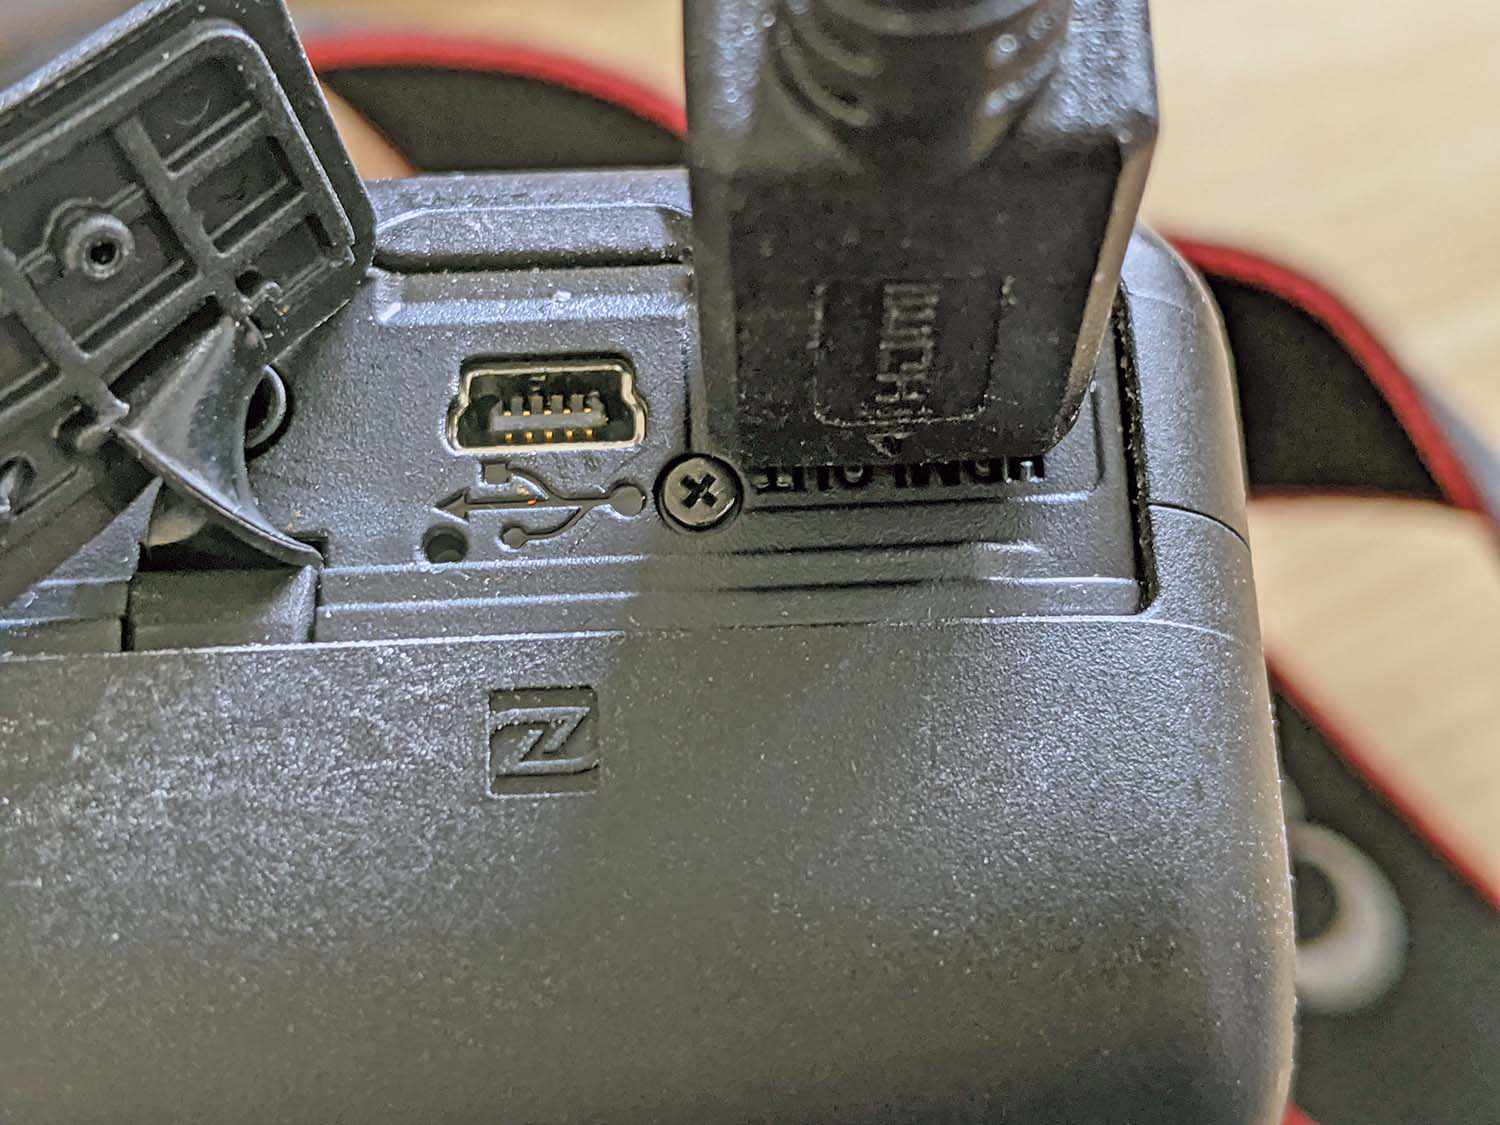 HDMI:n liittäminen DSLR-laitteeseen.